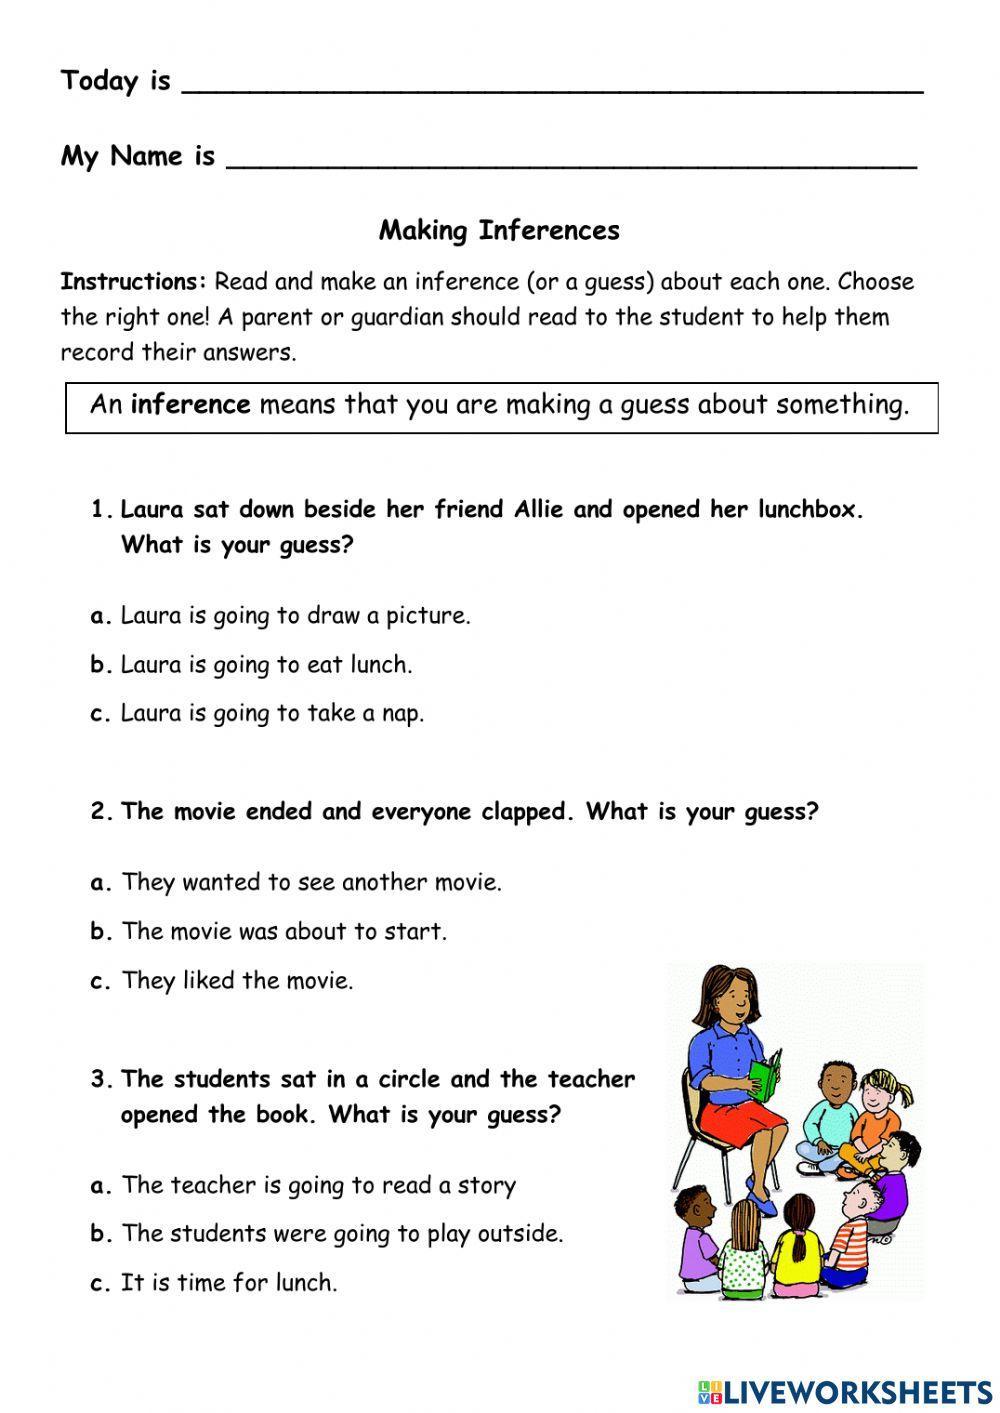 Making Inferences Using Short Sentences Worksheet 